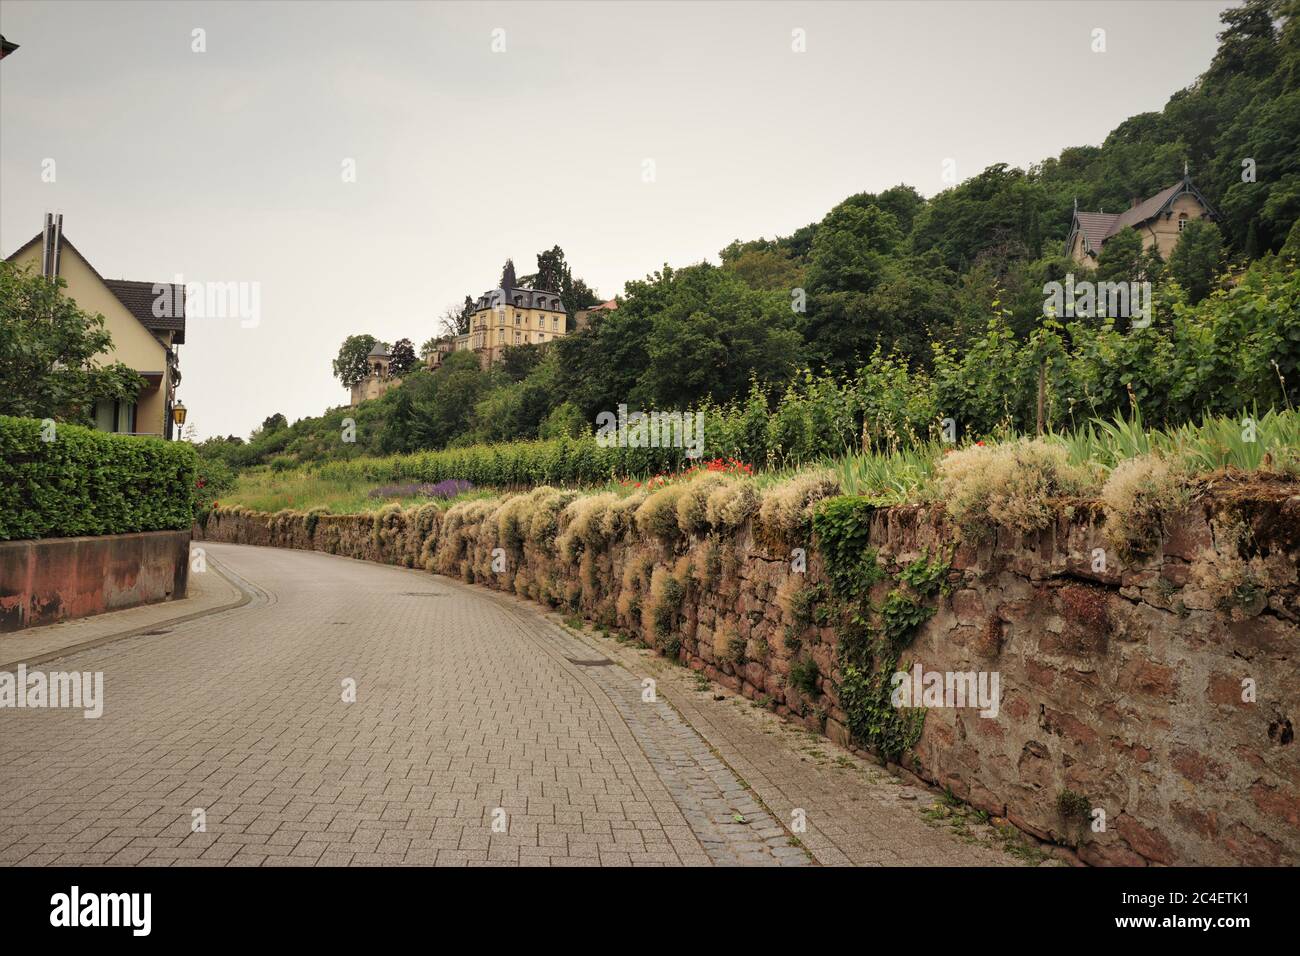 Vignobles et vieilles maisons dans le pays du vin allemand. Haardt, Allemagne Banque D'Images